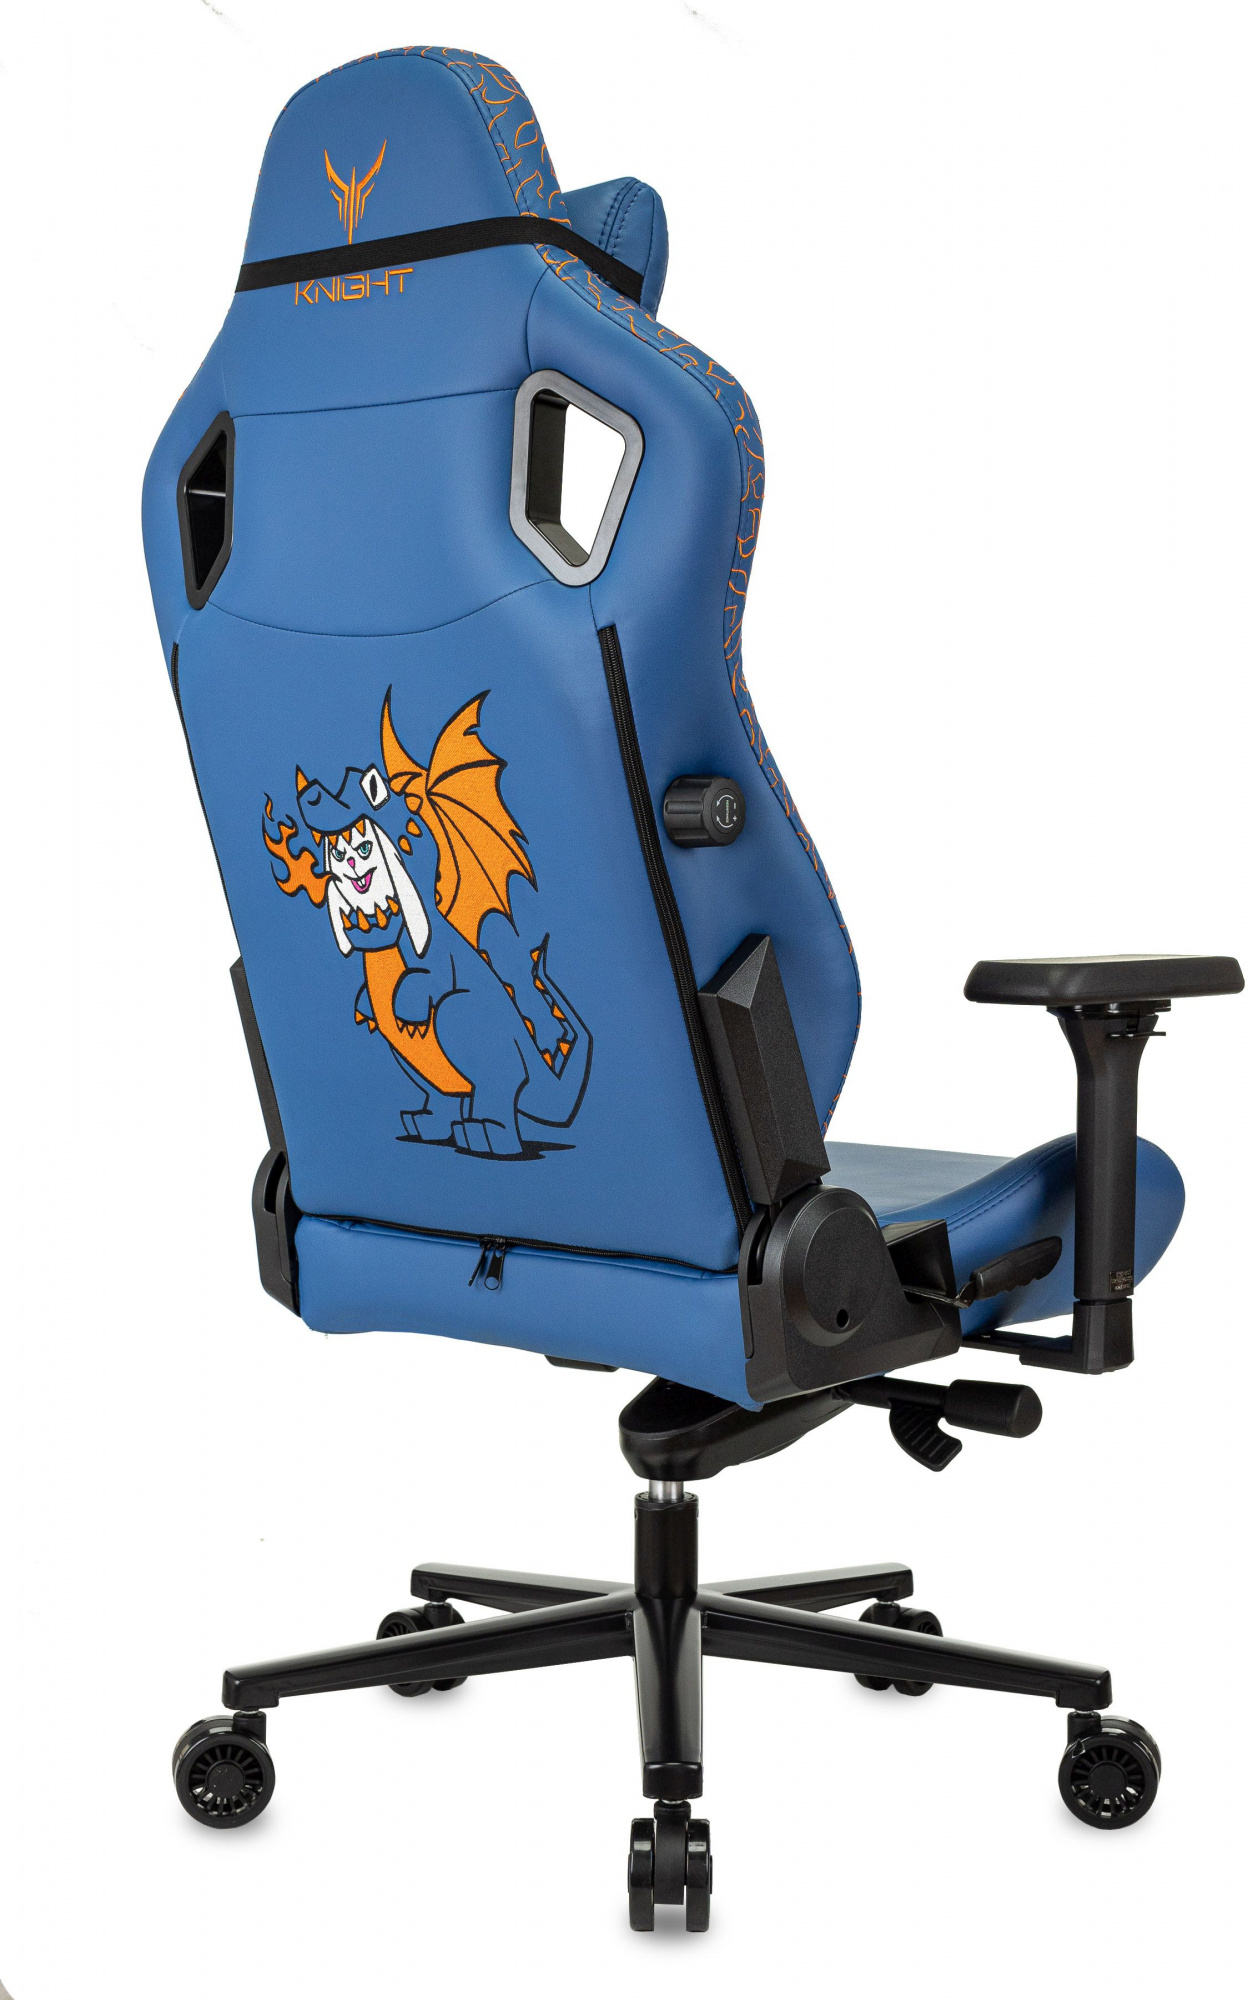 Кресло игровое Knight Craft Dragon синий эко.кожа крестов. металл